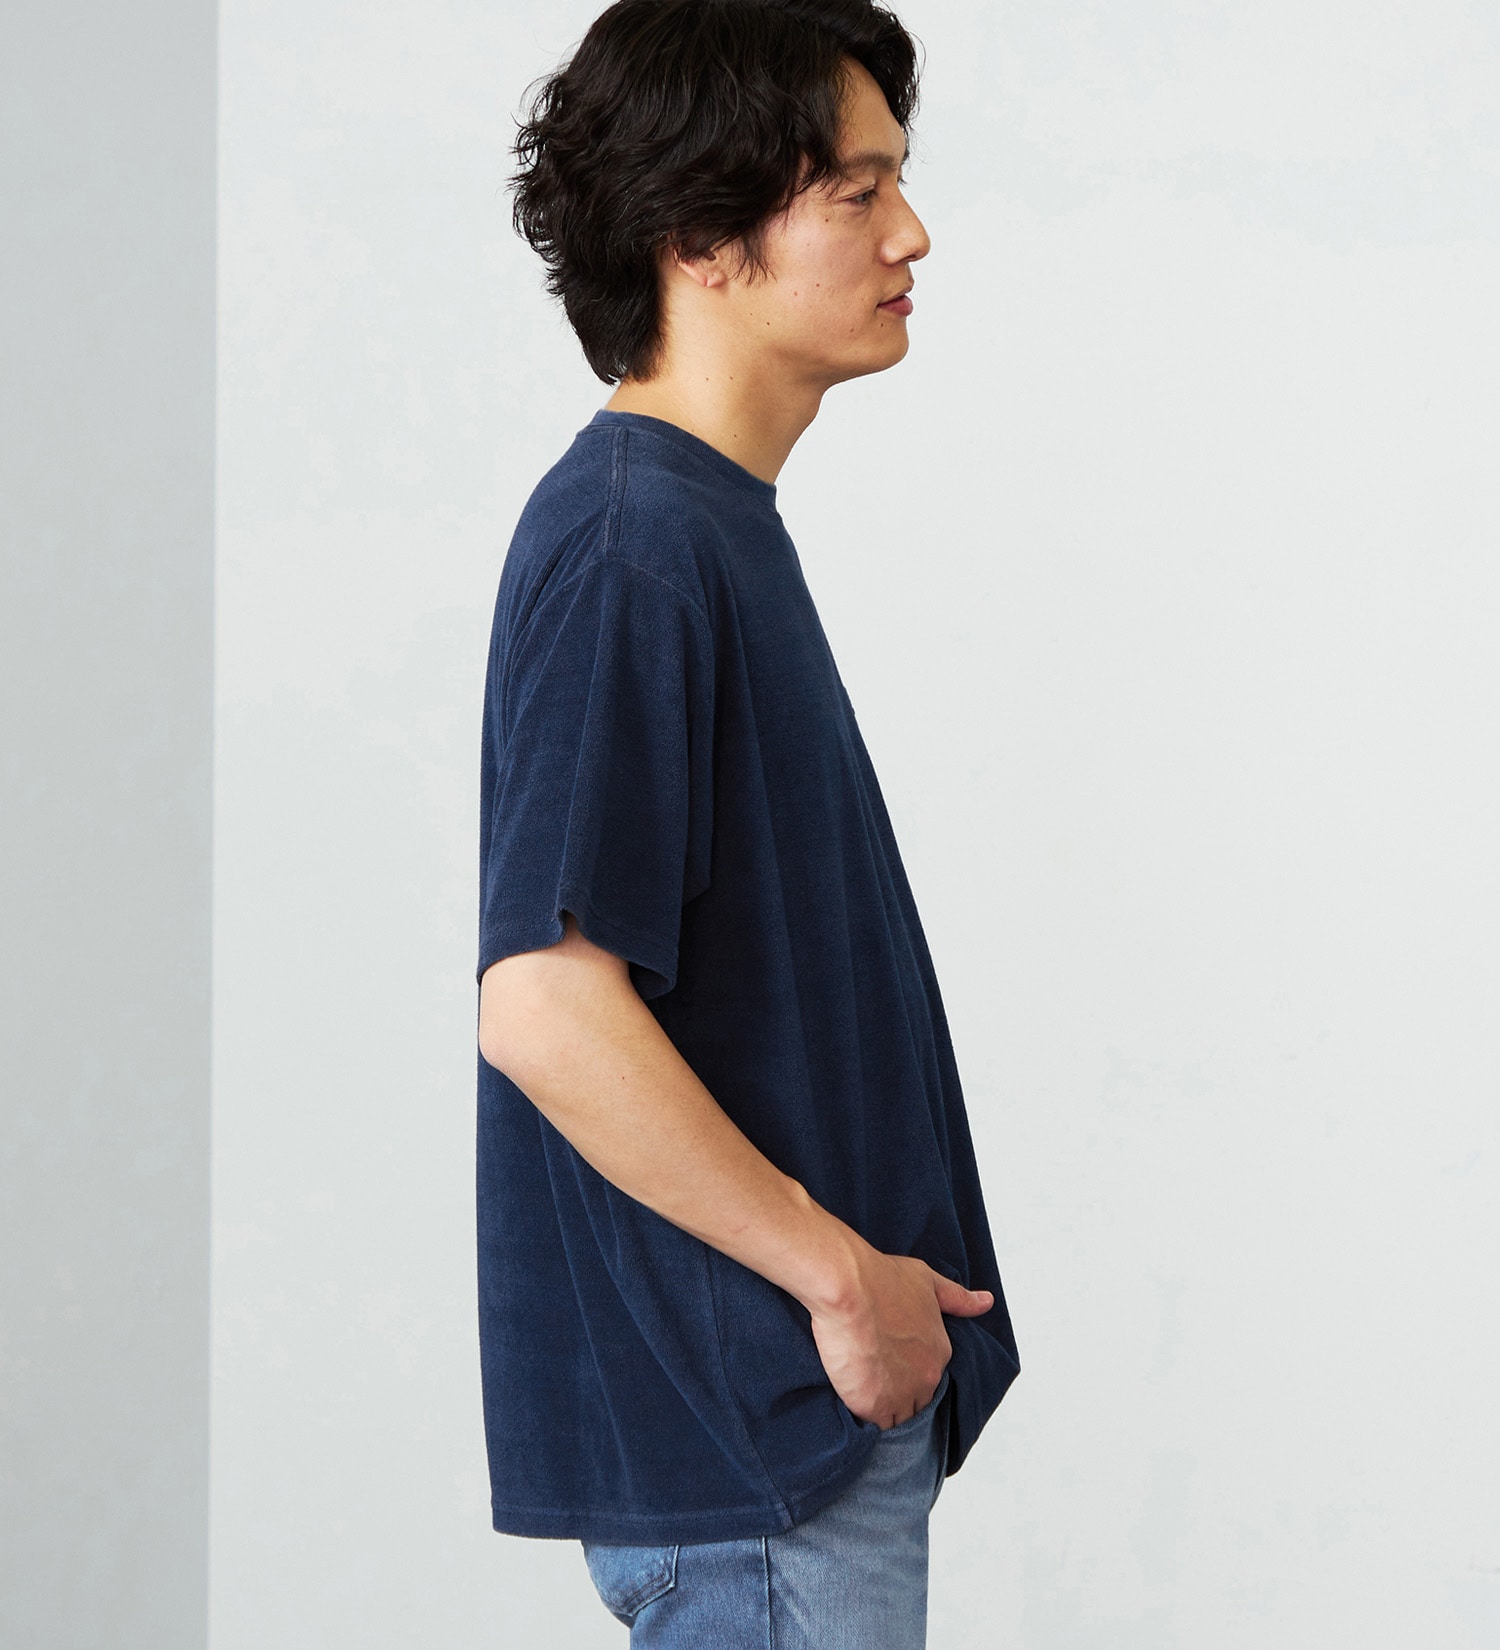 EDWIN(エドウイン)のインディゴポケット半袖Tシャツ|トップス/Tシャツ/カットソー/メンズ|濃色ブルー